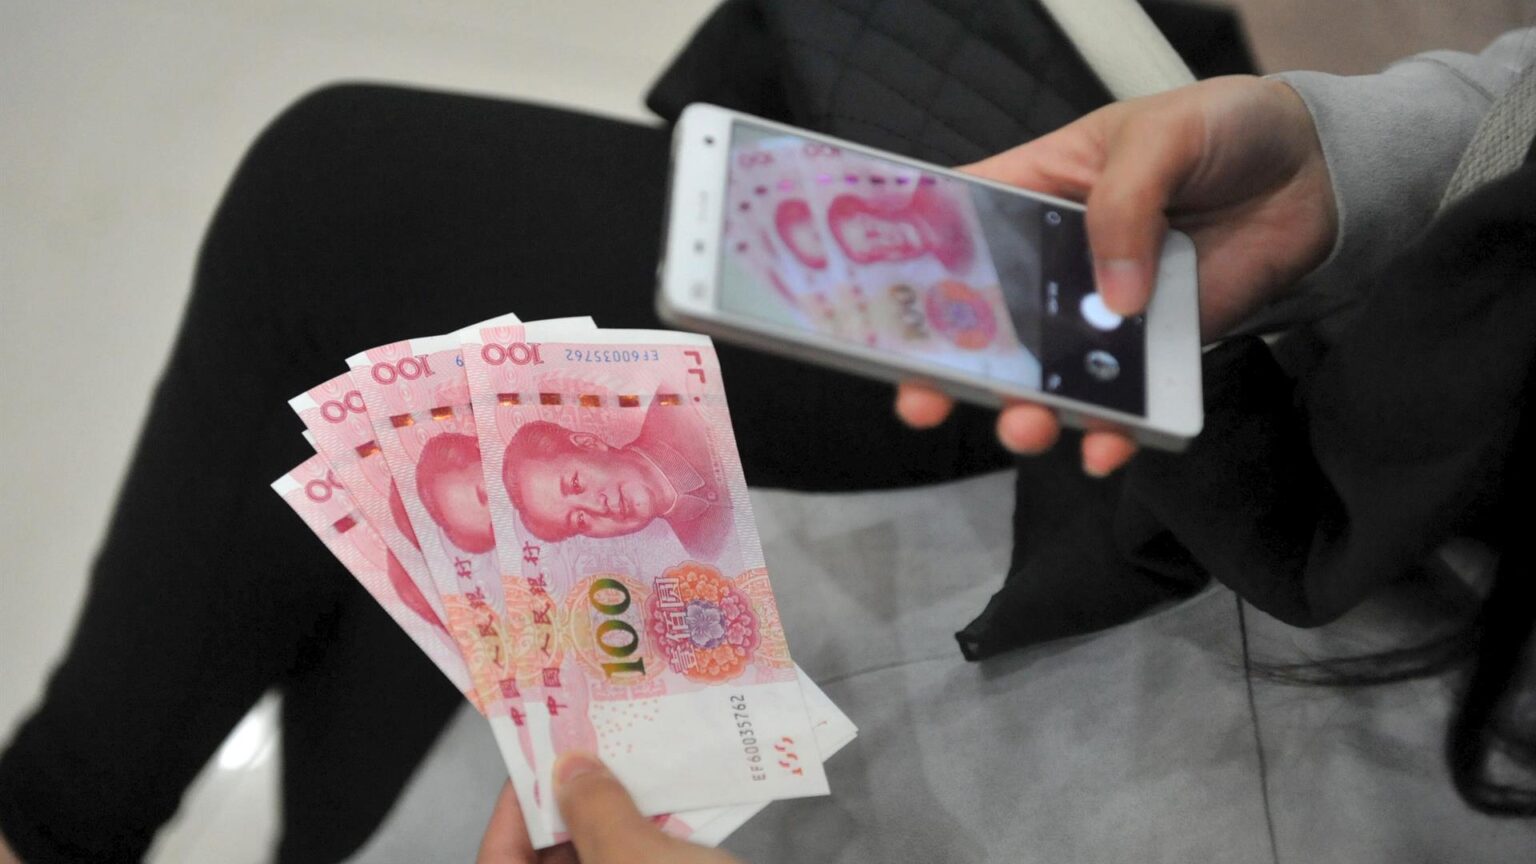 El yuan desplazó por primera vez en febrero al dólar como divisa más intercambiada en Rusia